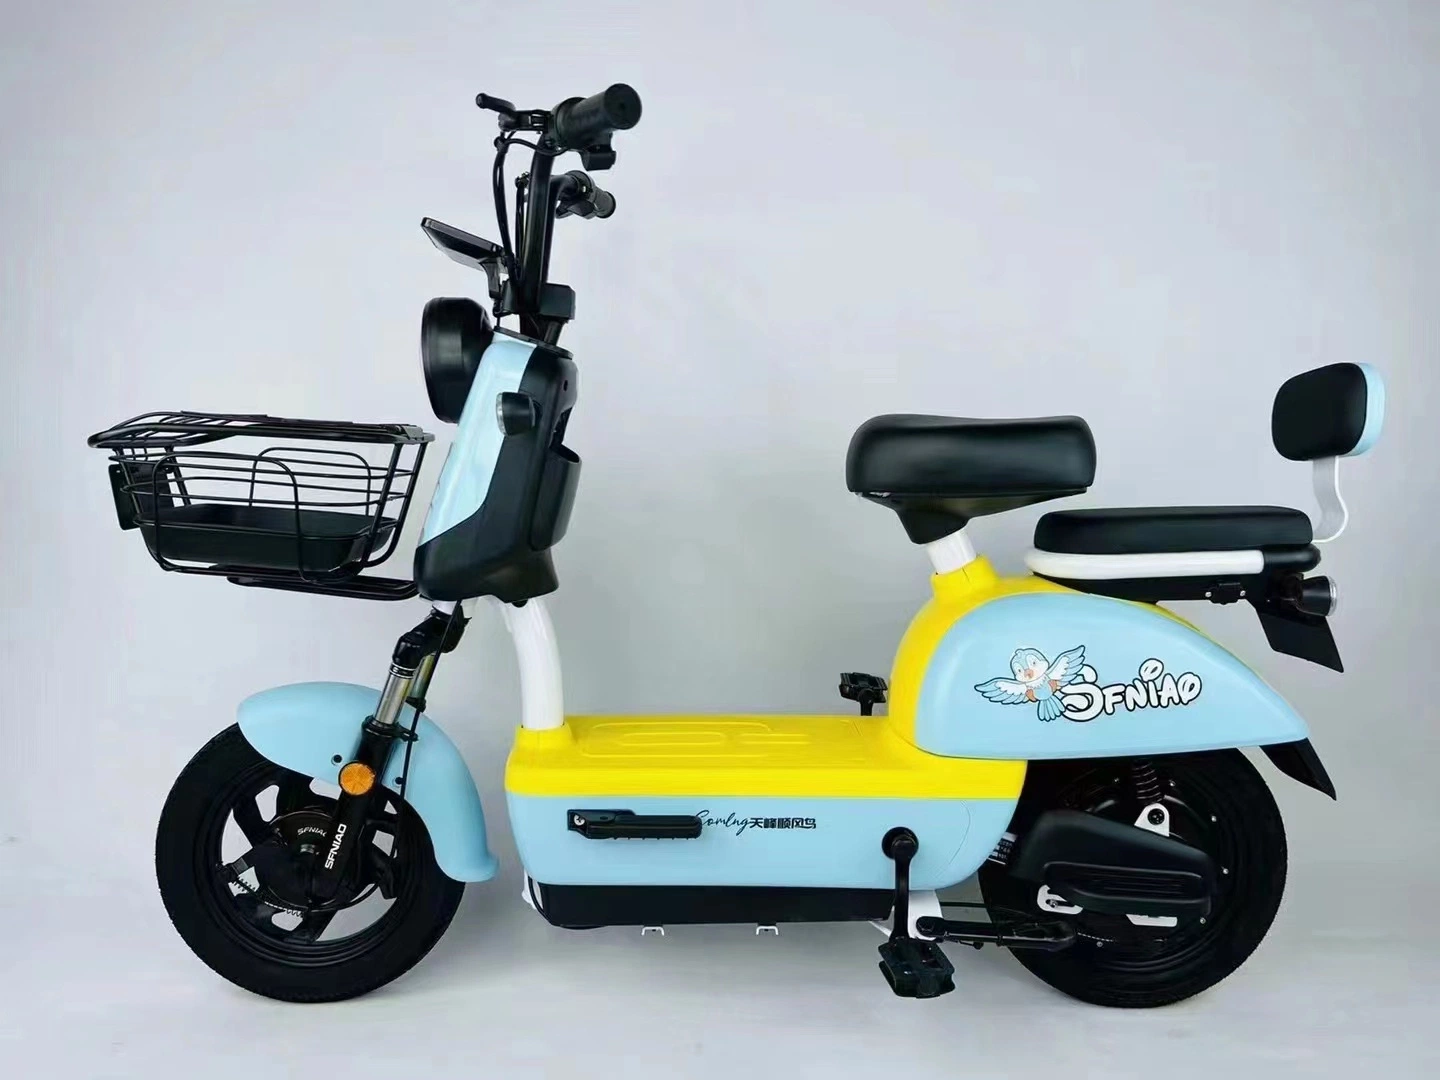 Bicicleta elétrica de scooter elevada vida útil da bateria com certificado CEE